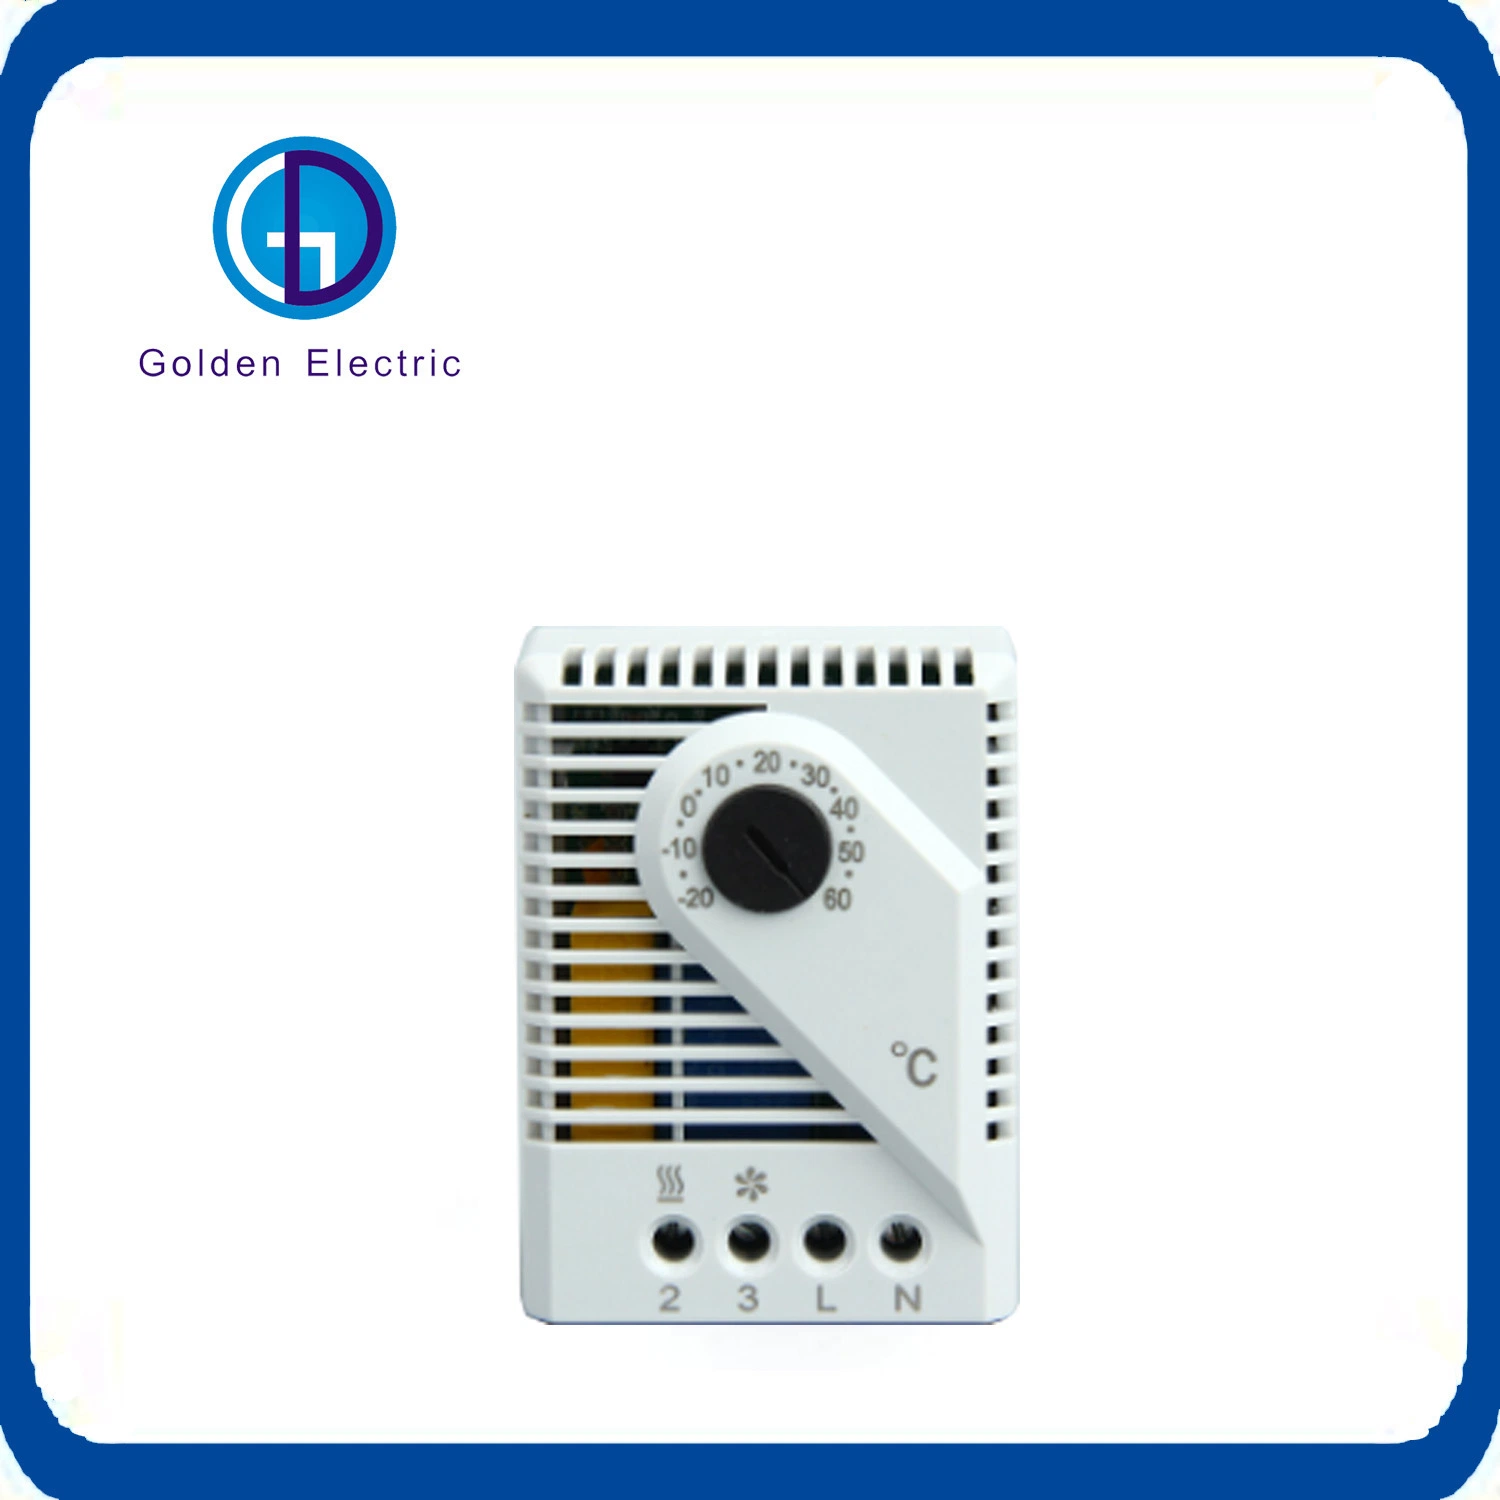 Elektronischer Thermostat elektrischer Schaltschrank Temperaturregler Chassis Kühlung und Heizen Temperatur Für Den Doppelten Gebrauch